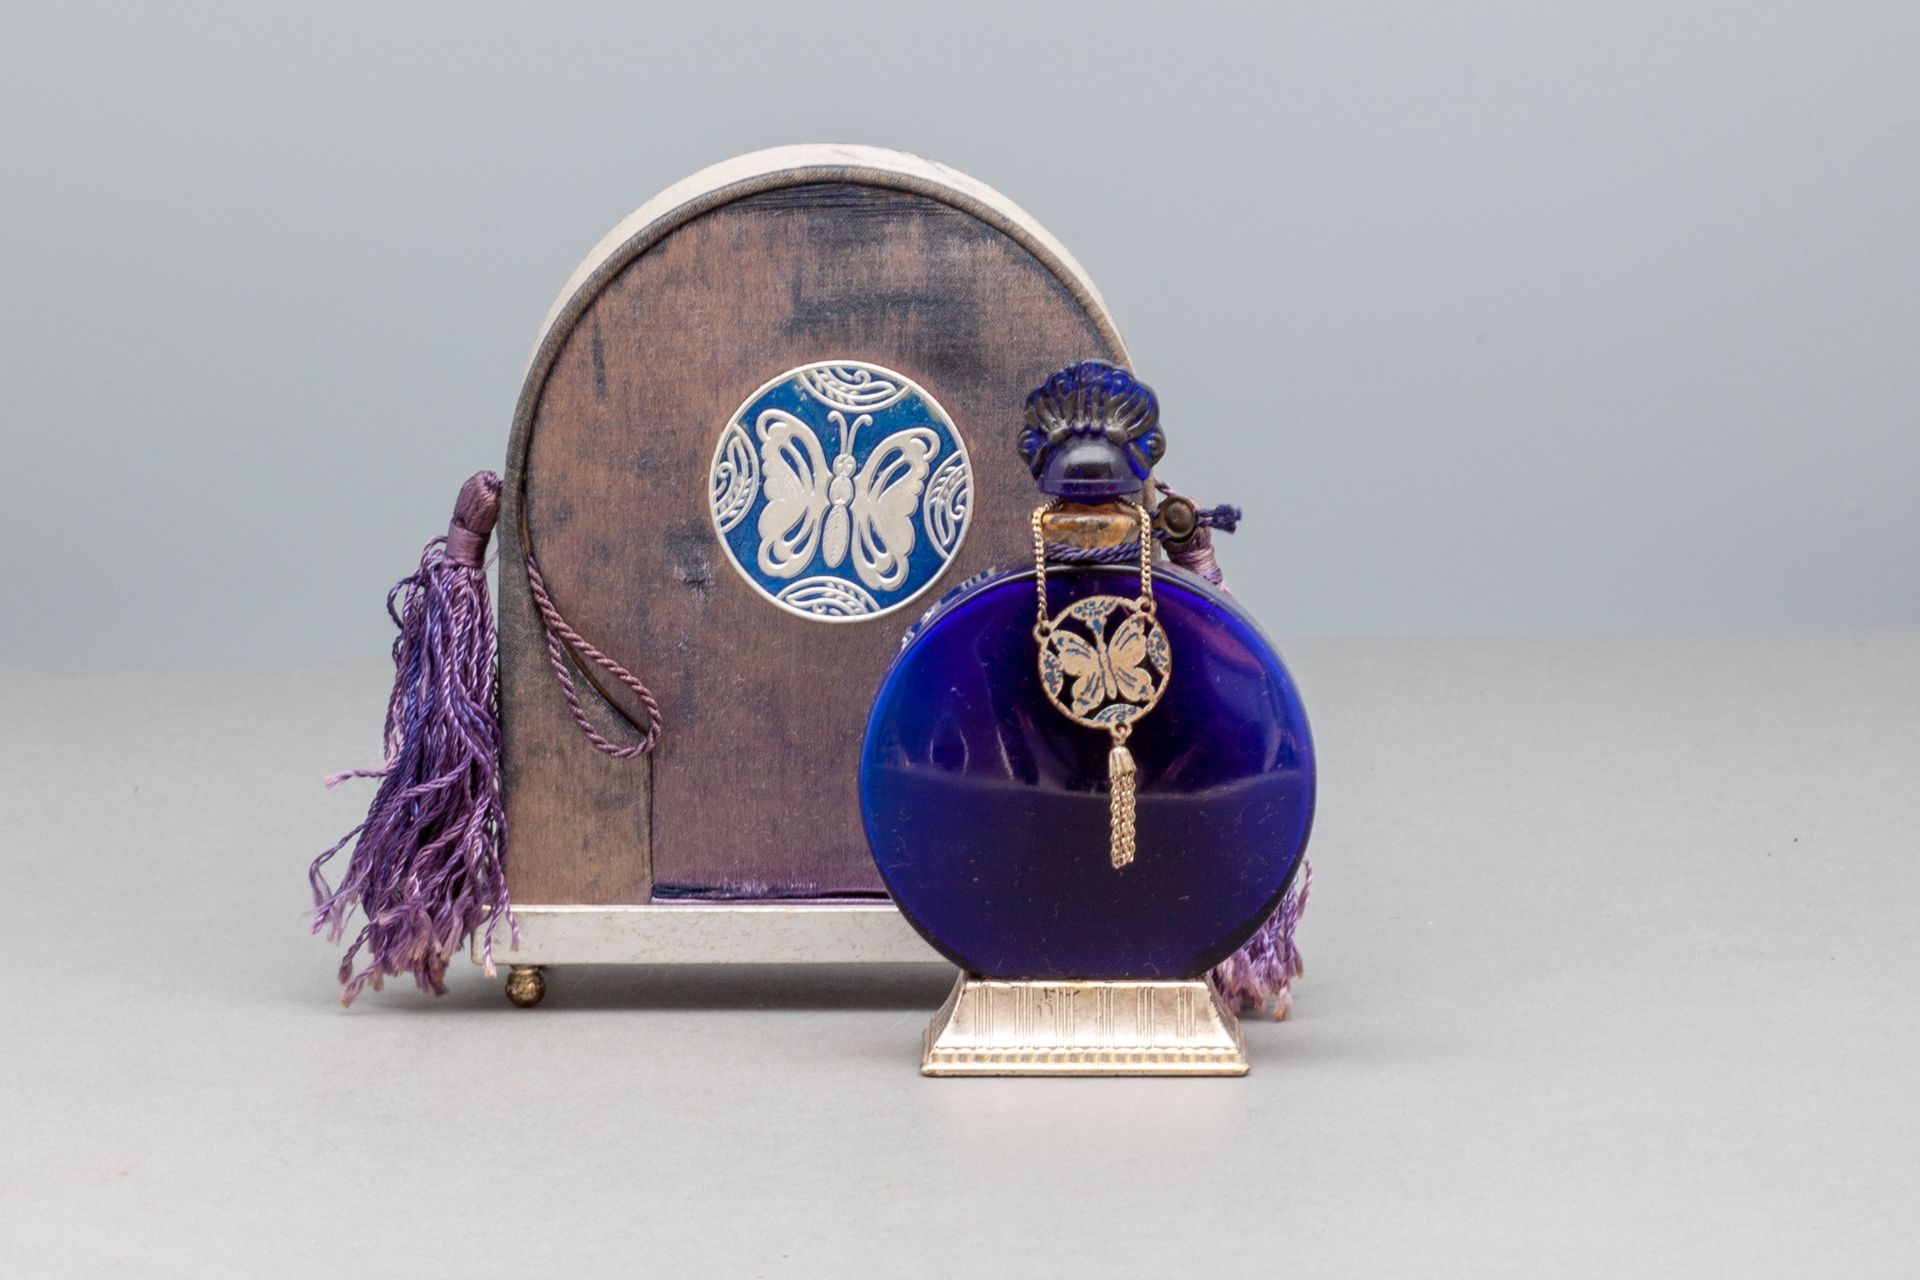 LUCRETIA VANDERBILT 蓝色玻璃瓶，装饰有流苏的蝴蝶。有标题的金属底座。缎面包覆的箱子两侧是吊坠。高瓶10.2厘米 - 高箱12.3厘米